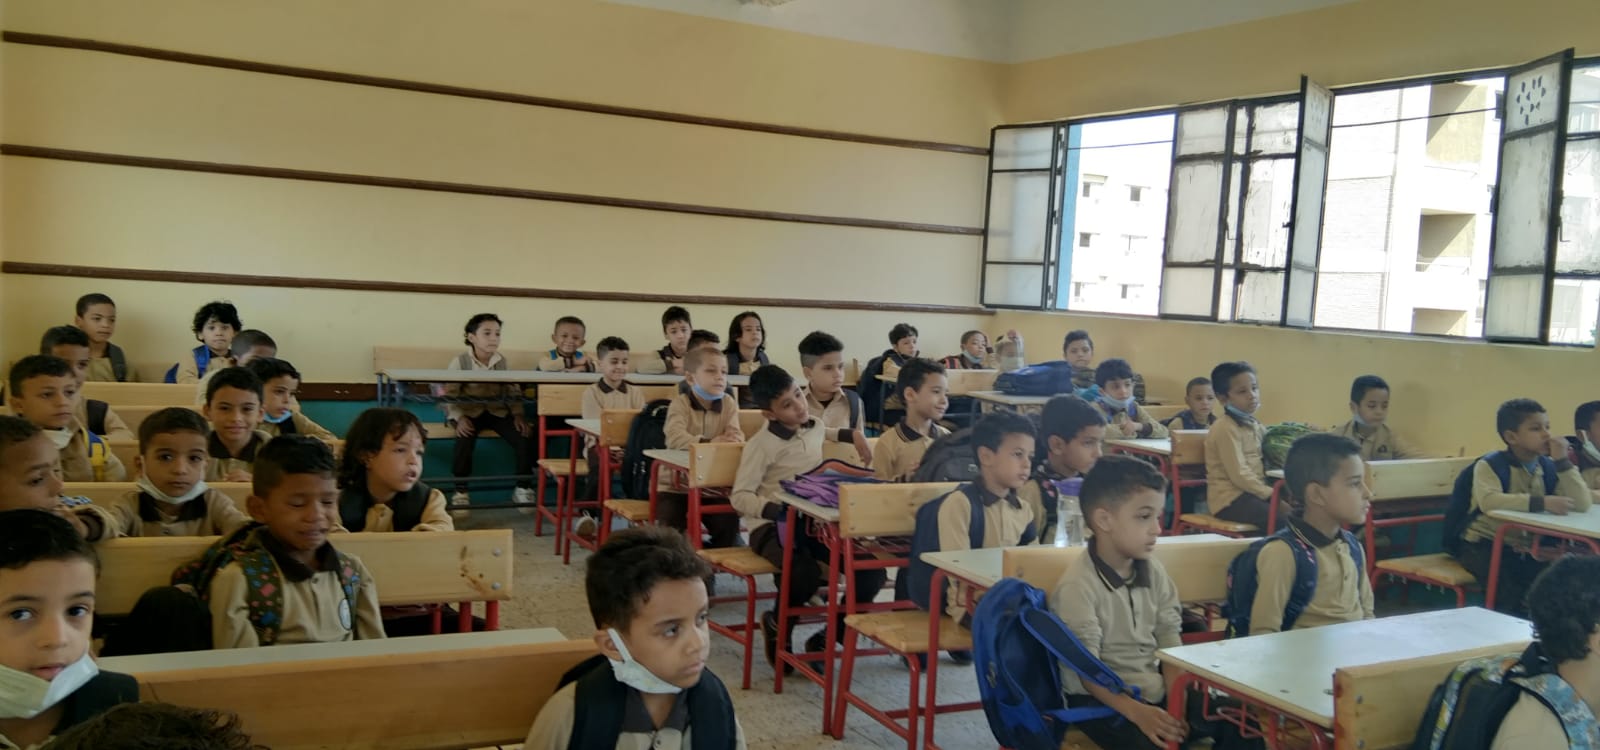 مسيرة طلابية بمدرسة الحفناوية الابتدائية بقرية أولاد نجم  بنجع حمادي